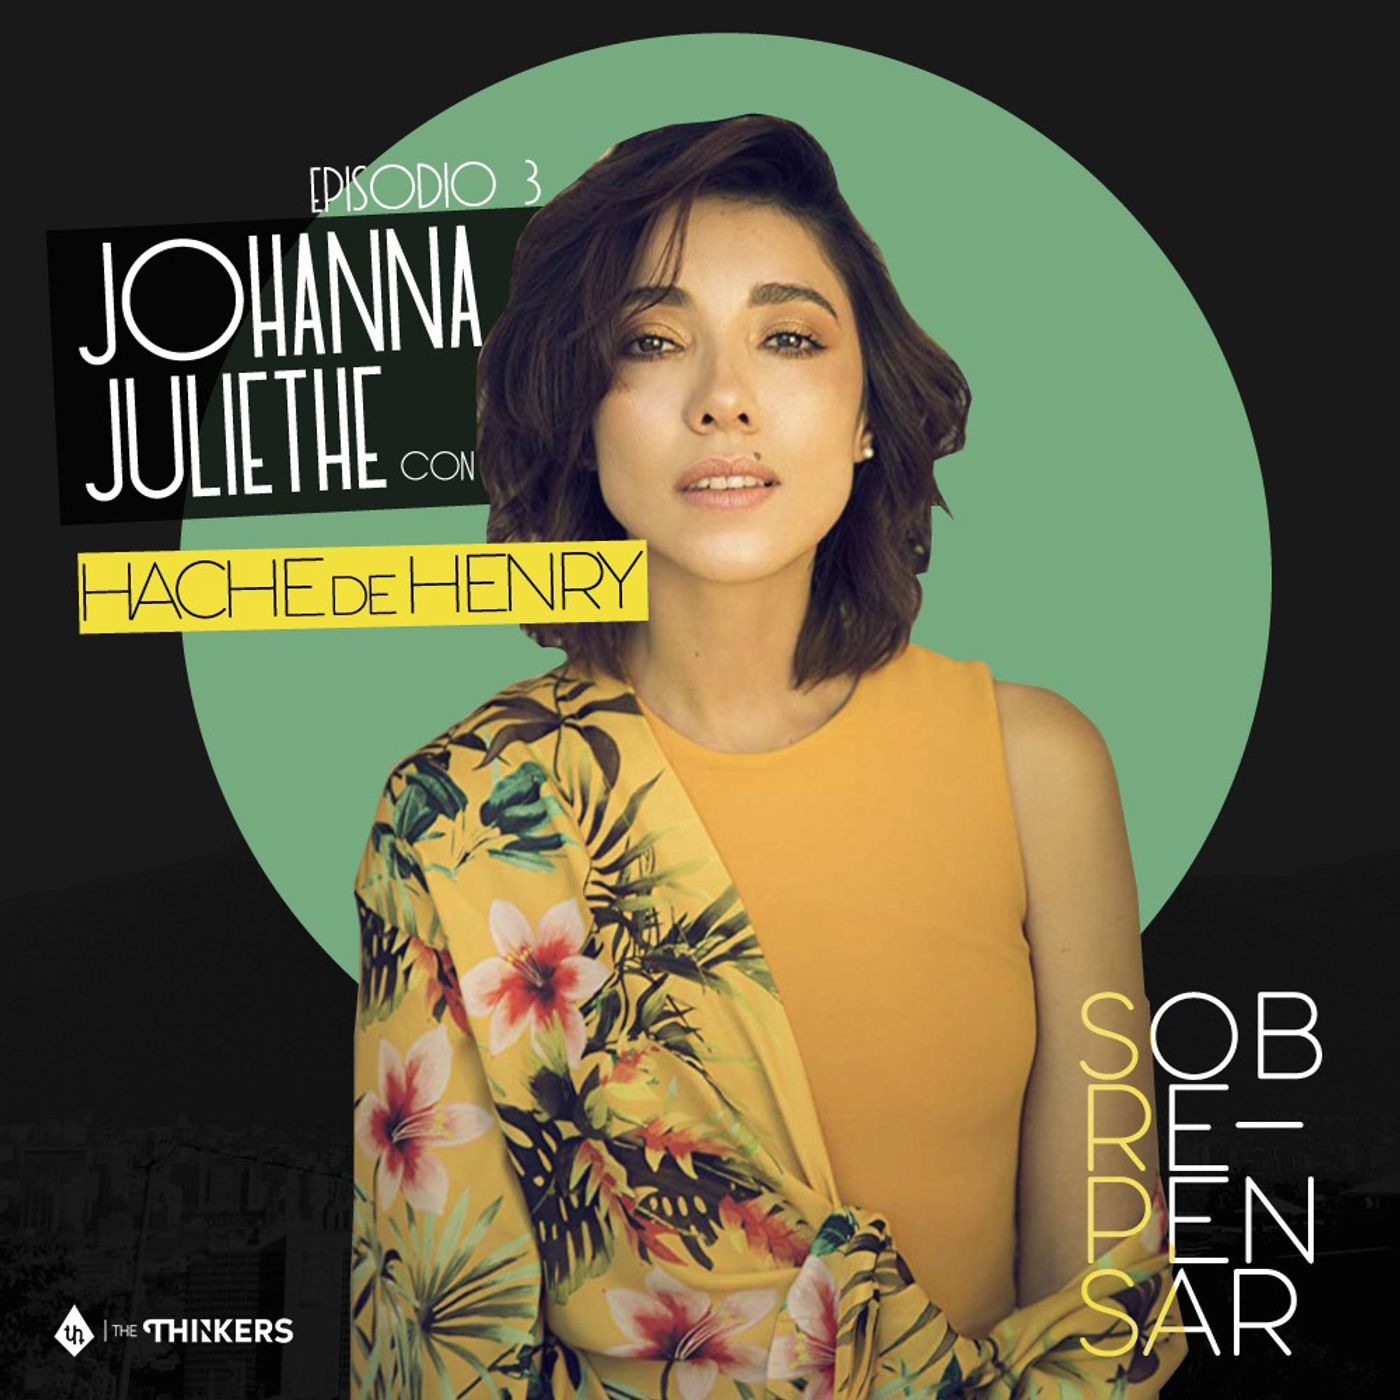 Episodio 3 - Johanna Juliethe / Irse con la pasión